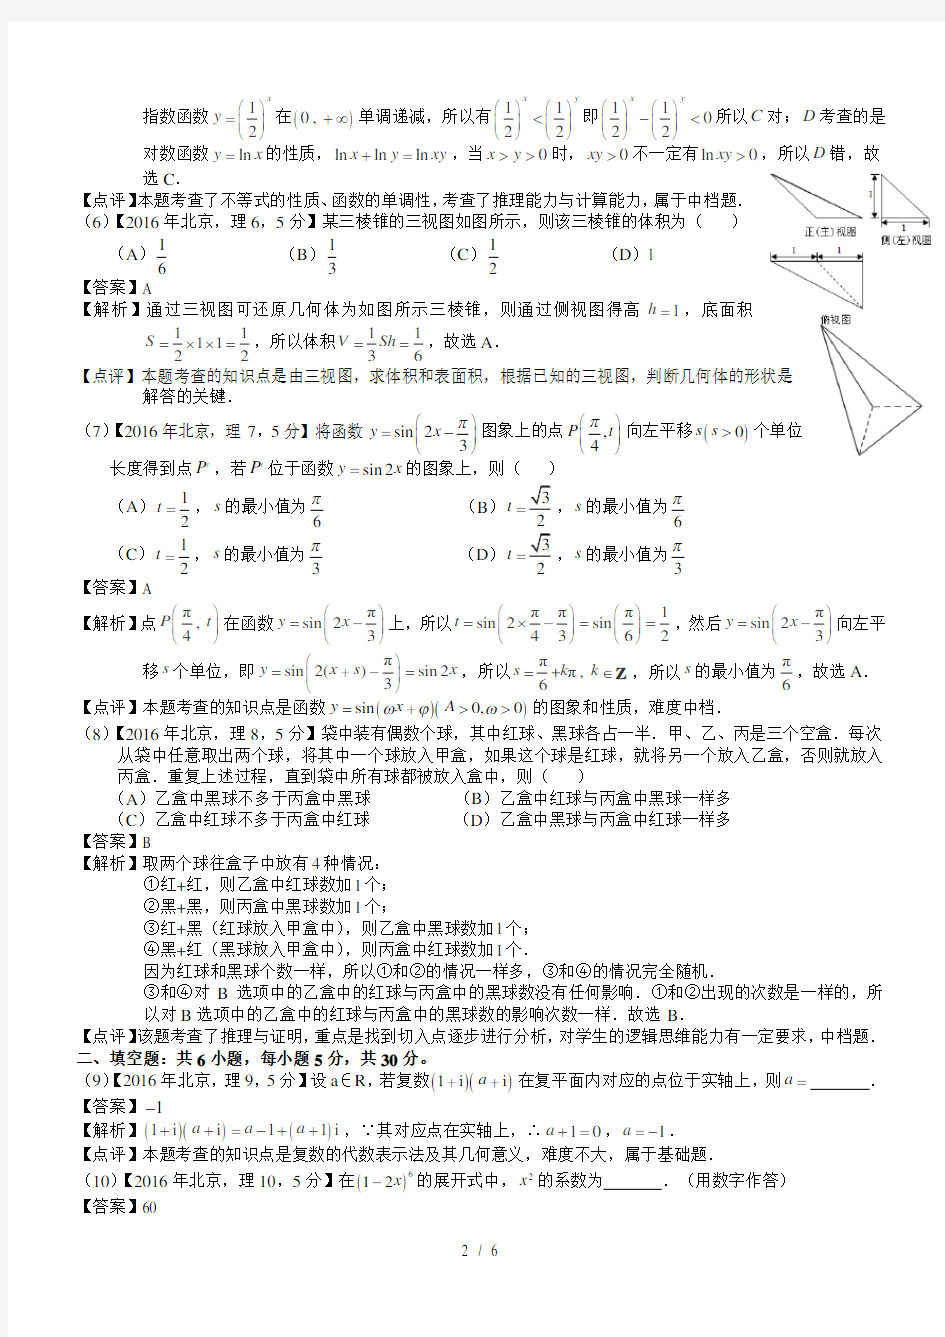 2016年高考北京理科数学试题及答案(word解析版)